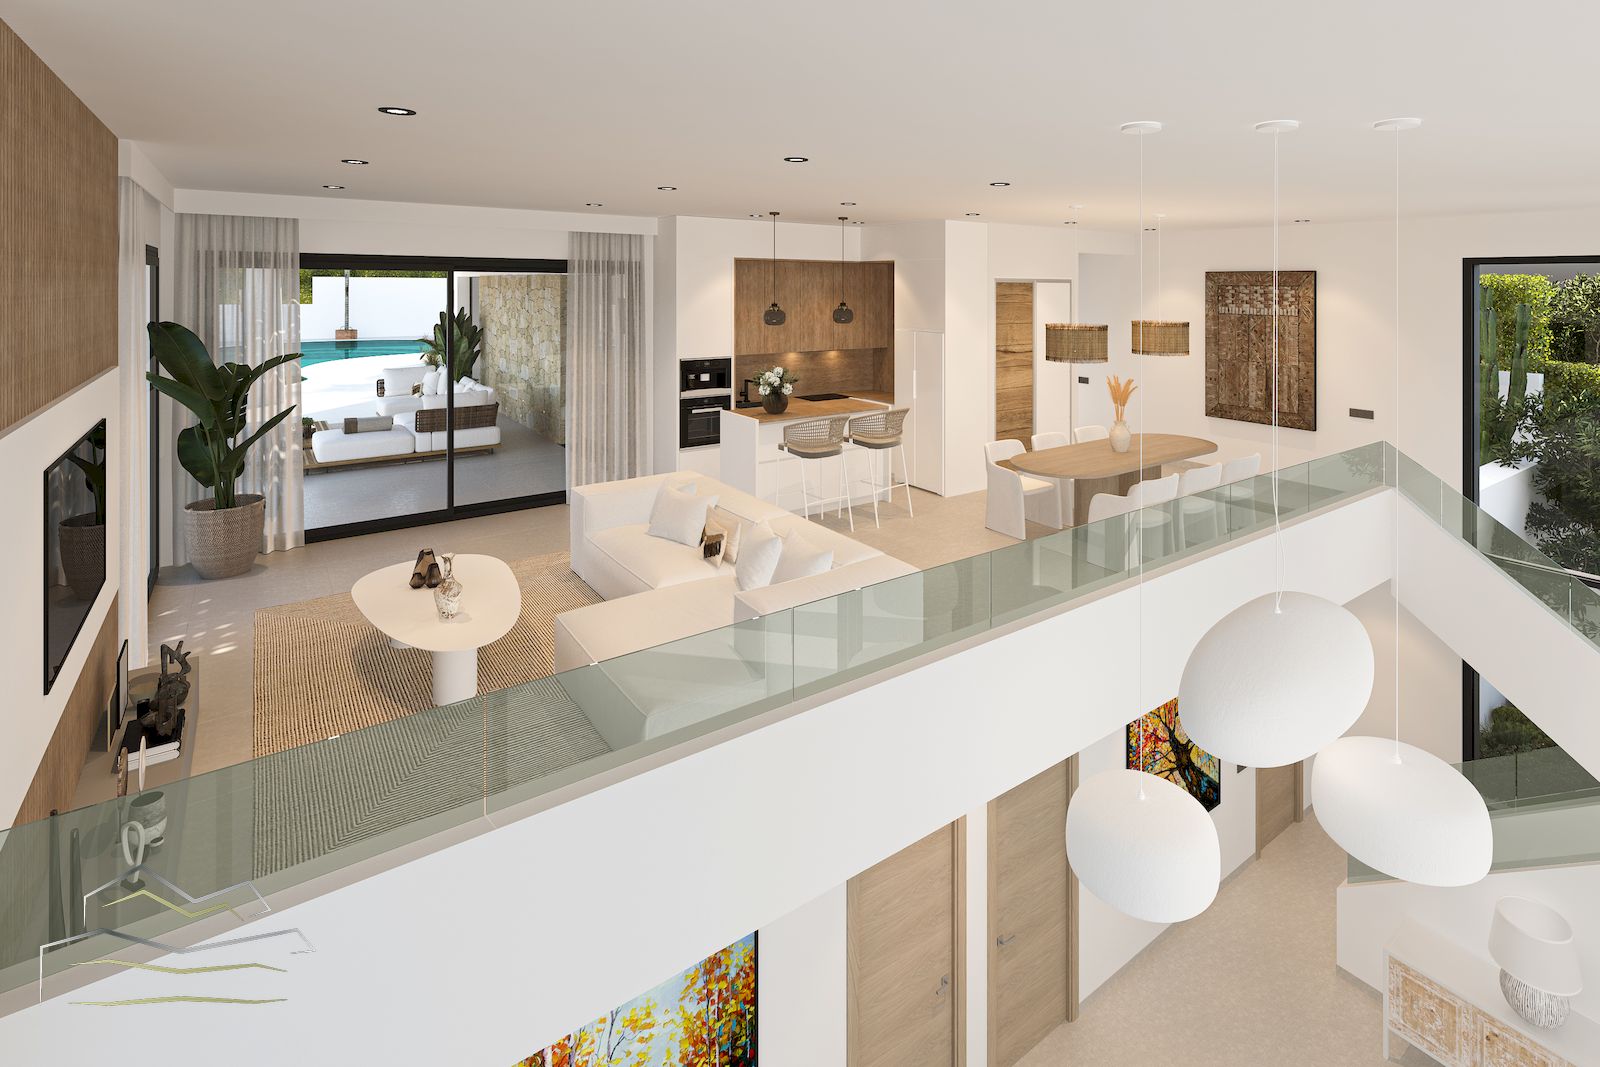 Villa in Ibiza-stijl te koop in Javea met uitzicht op zee